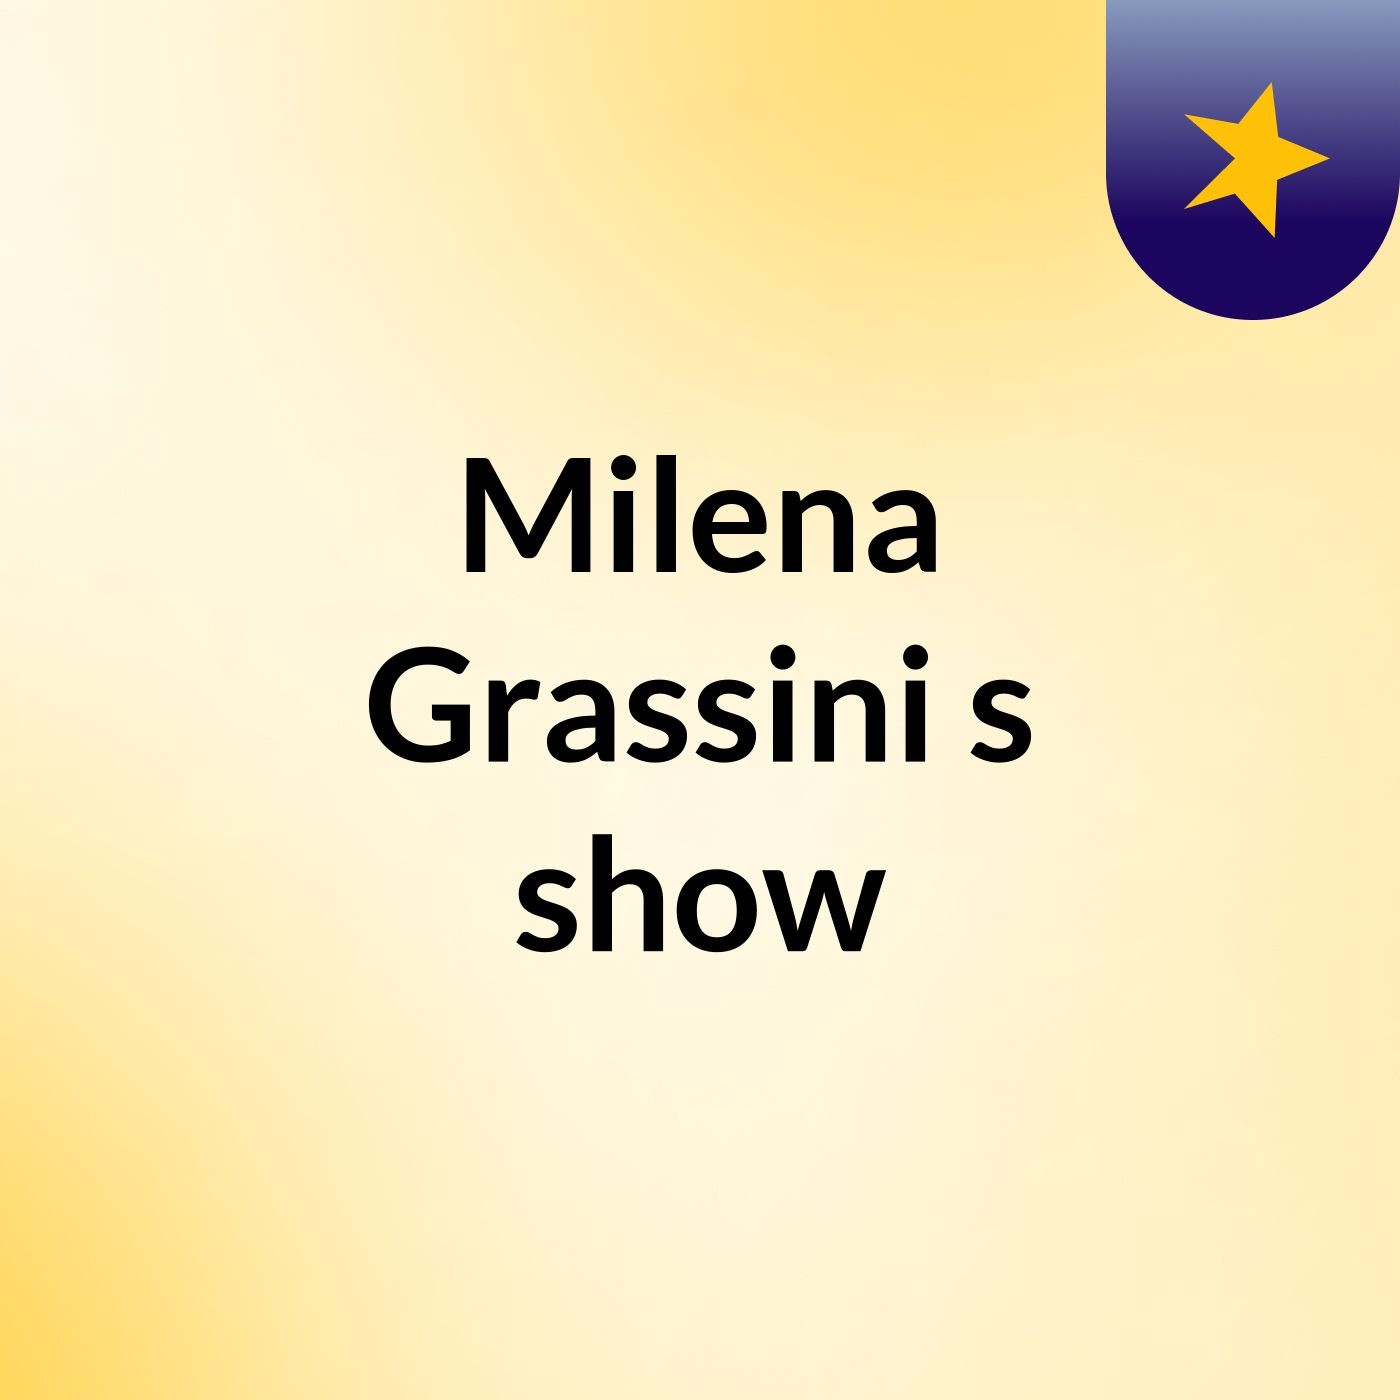 Milena Grassini's show